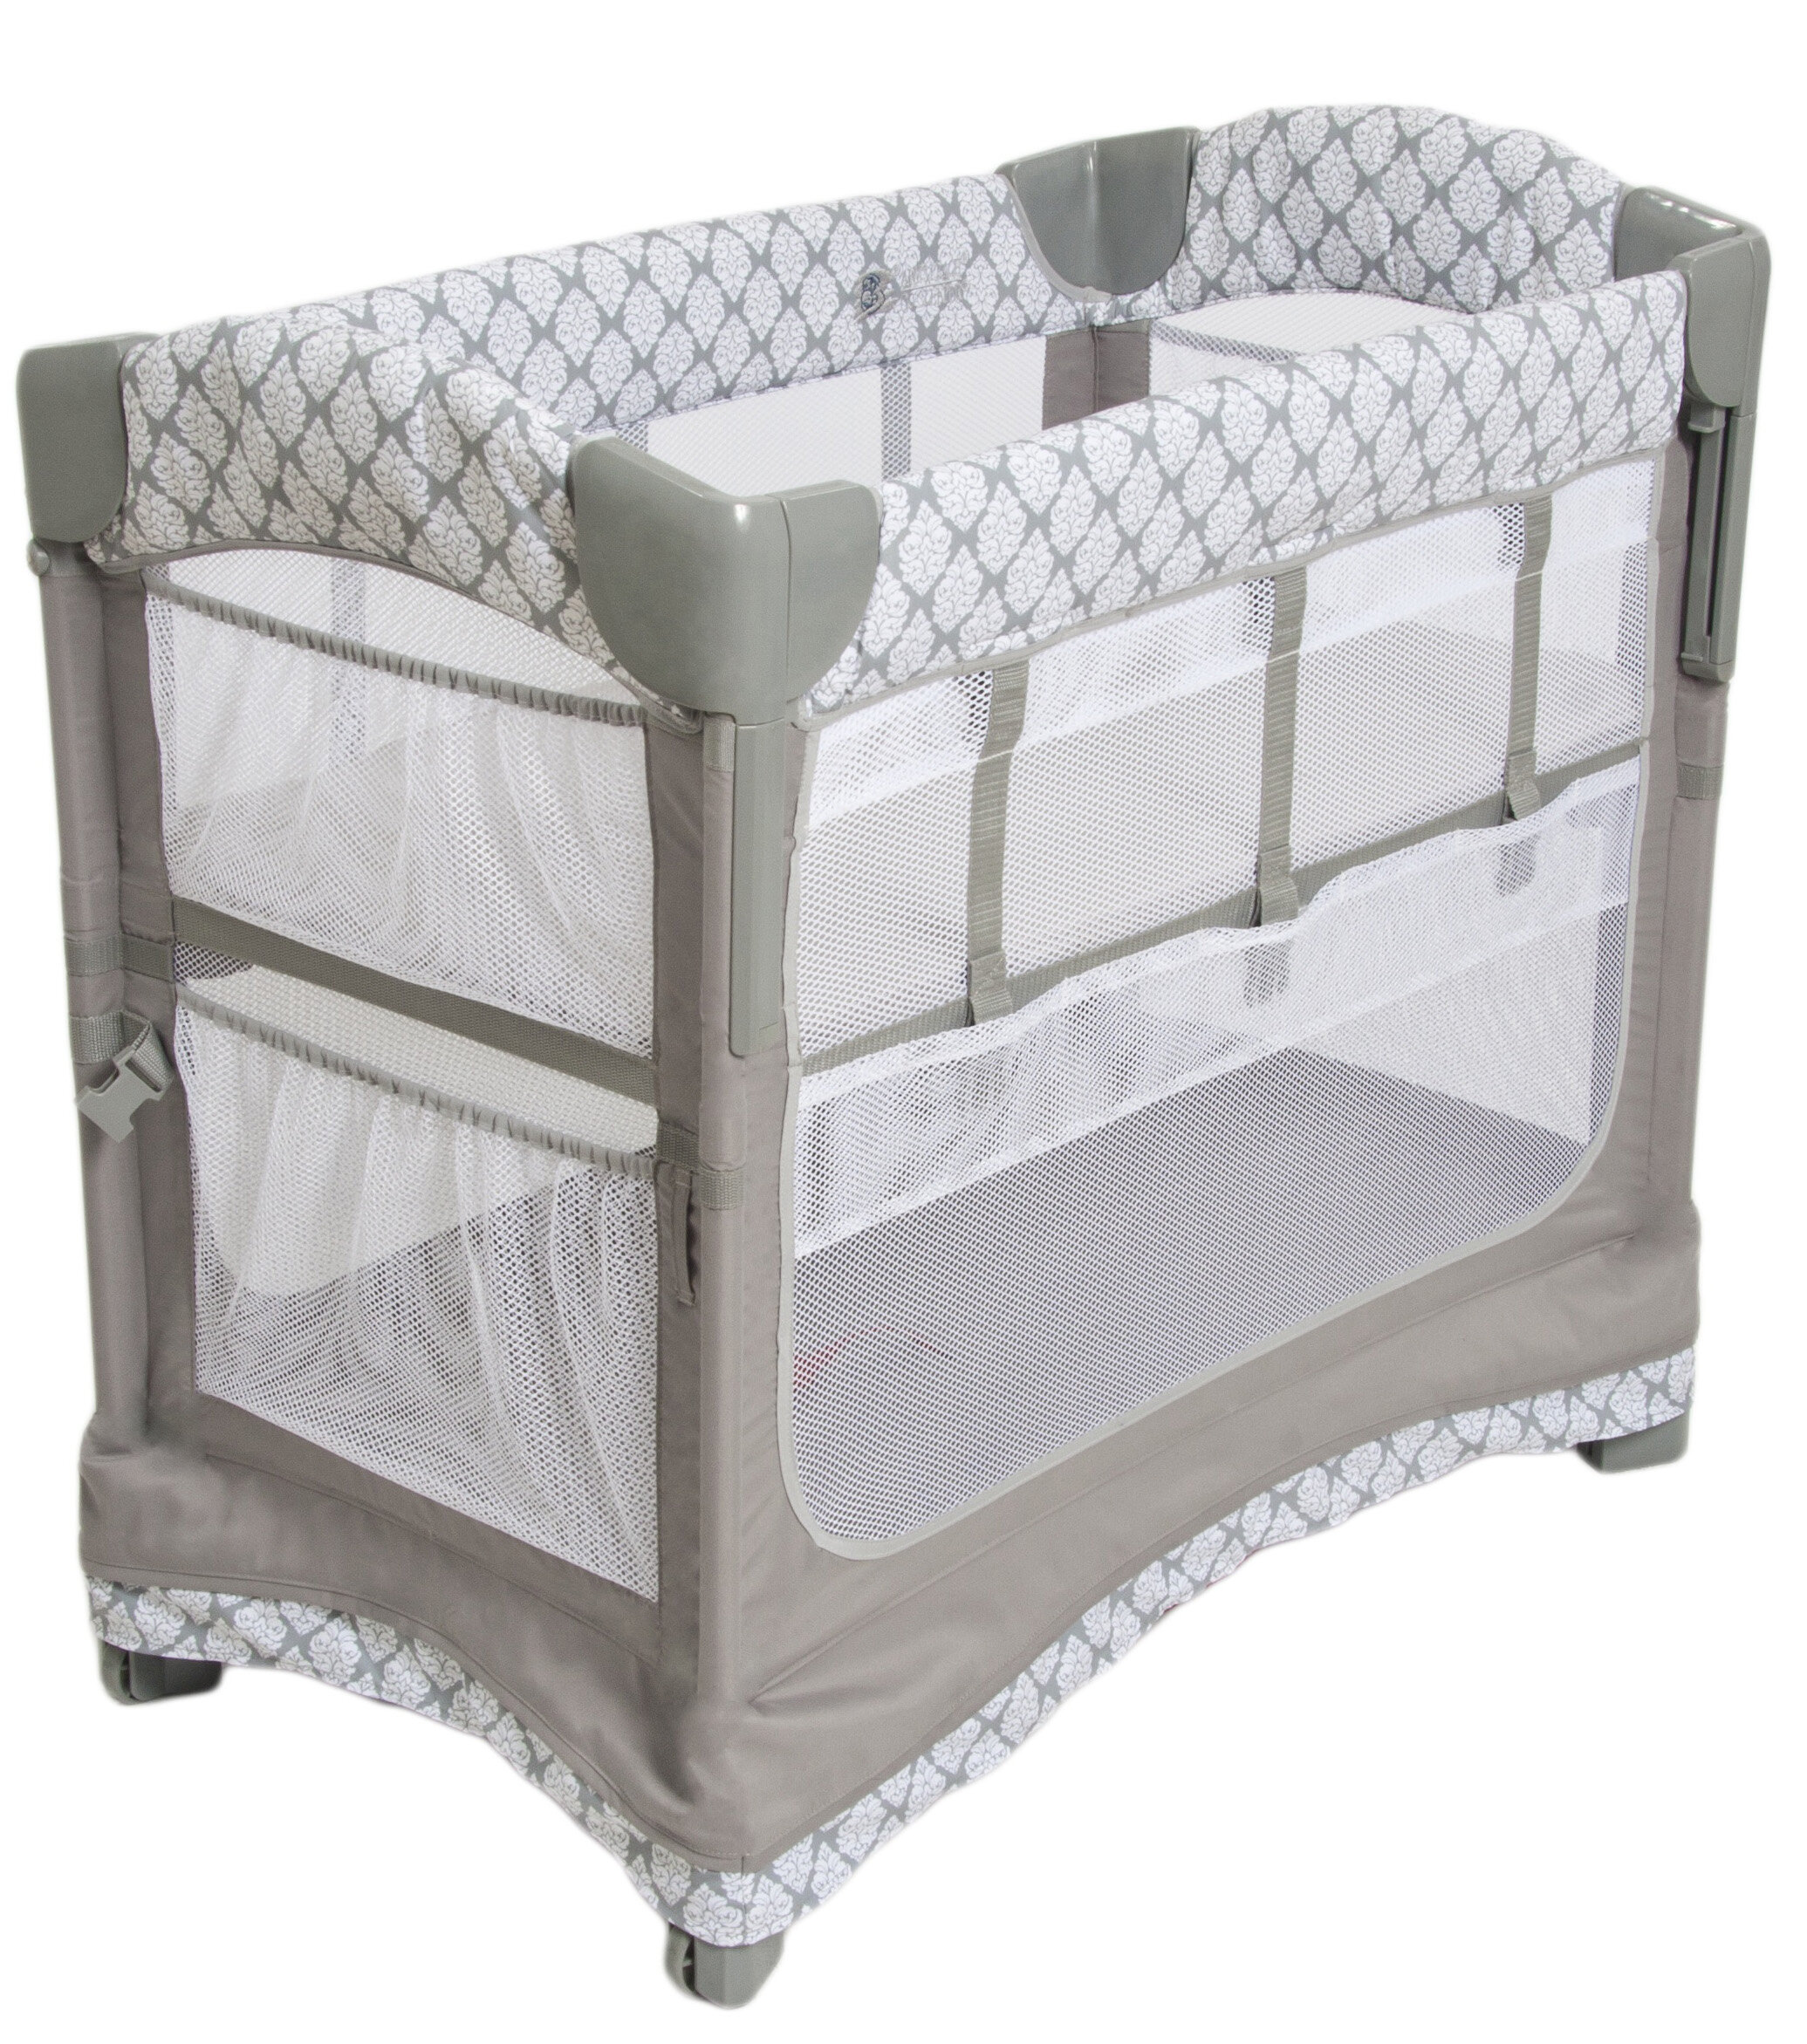 bedside crib mobile